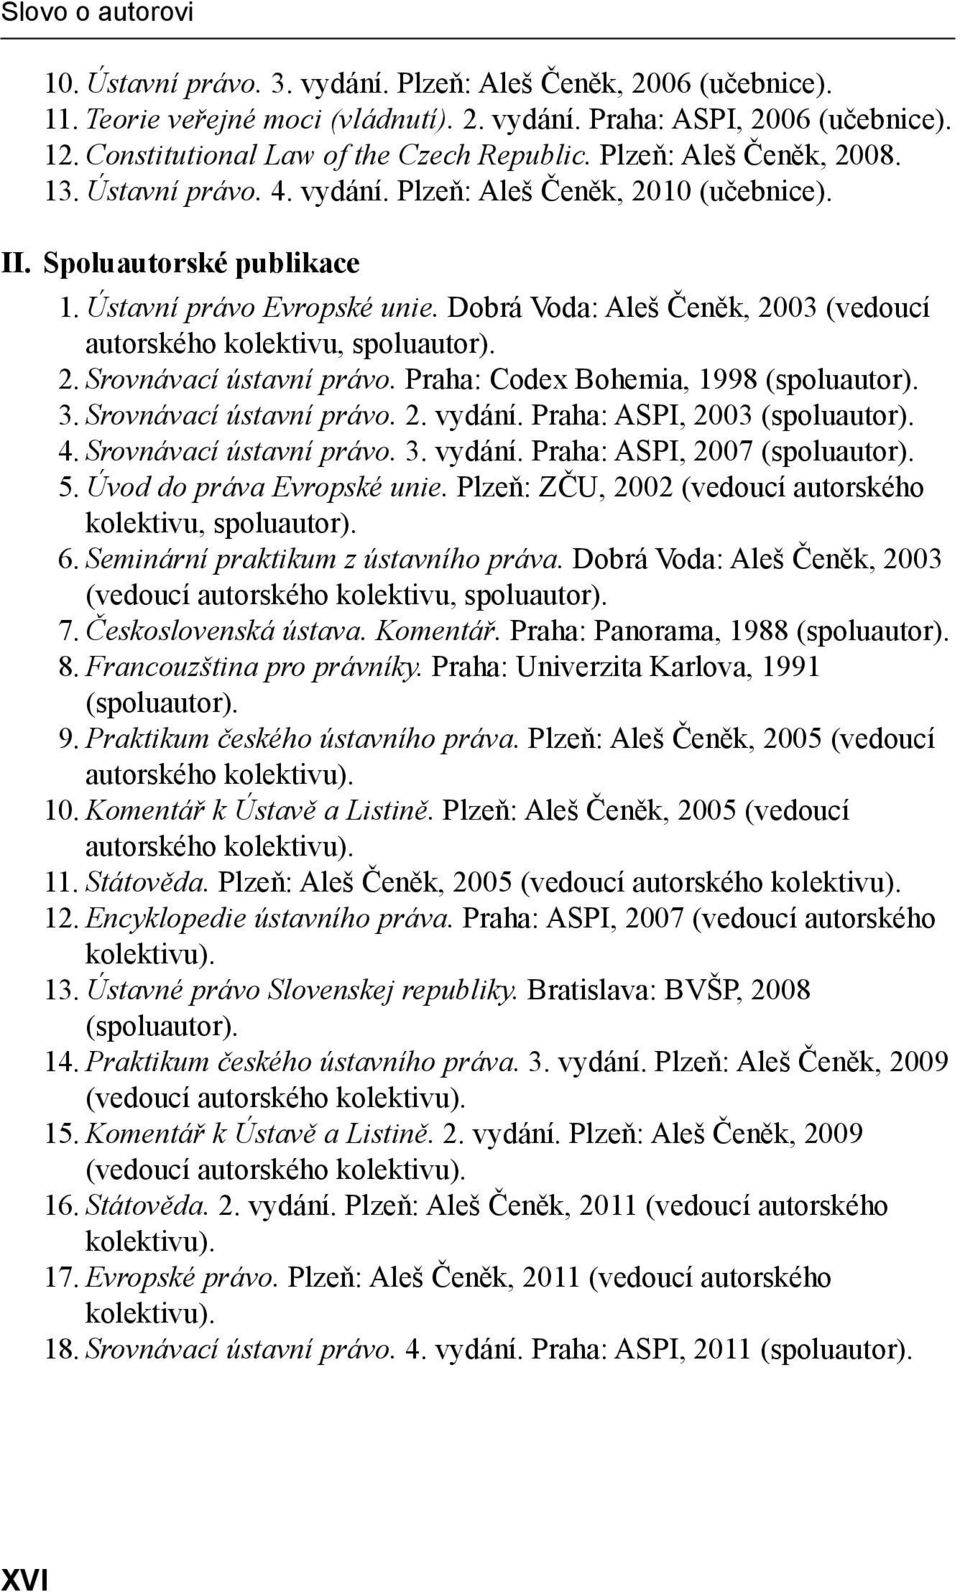 Dobrá Voda: Aleš Čeněk, 2003 (vedoucí autorského kolektivu, spoluautor). 2. Srovnávací ústavní právo. Praha: Codex Bohemia, 1998 (spoluautor). 3. Srovnávací ústavní právo. 2. vydání.